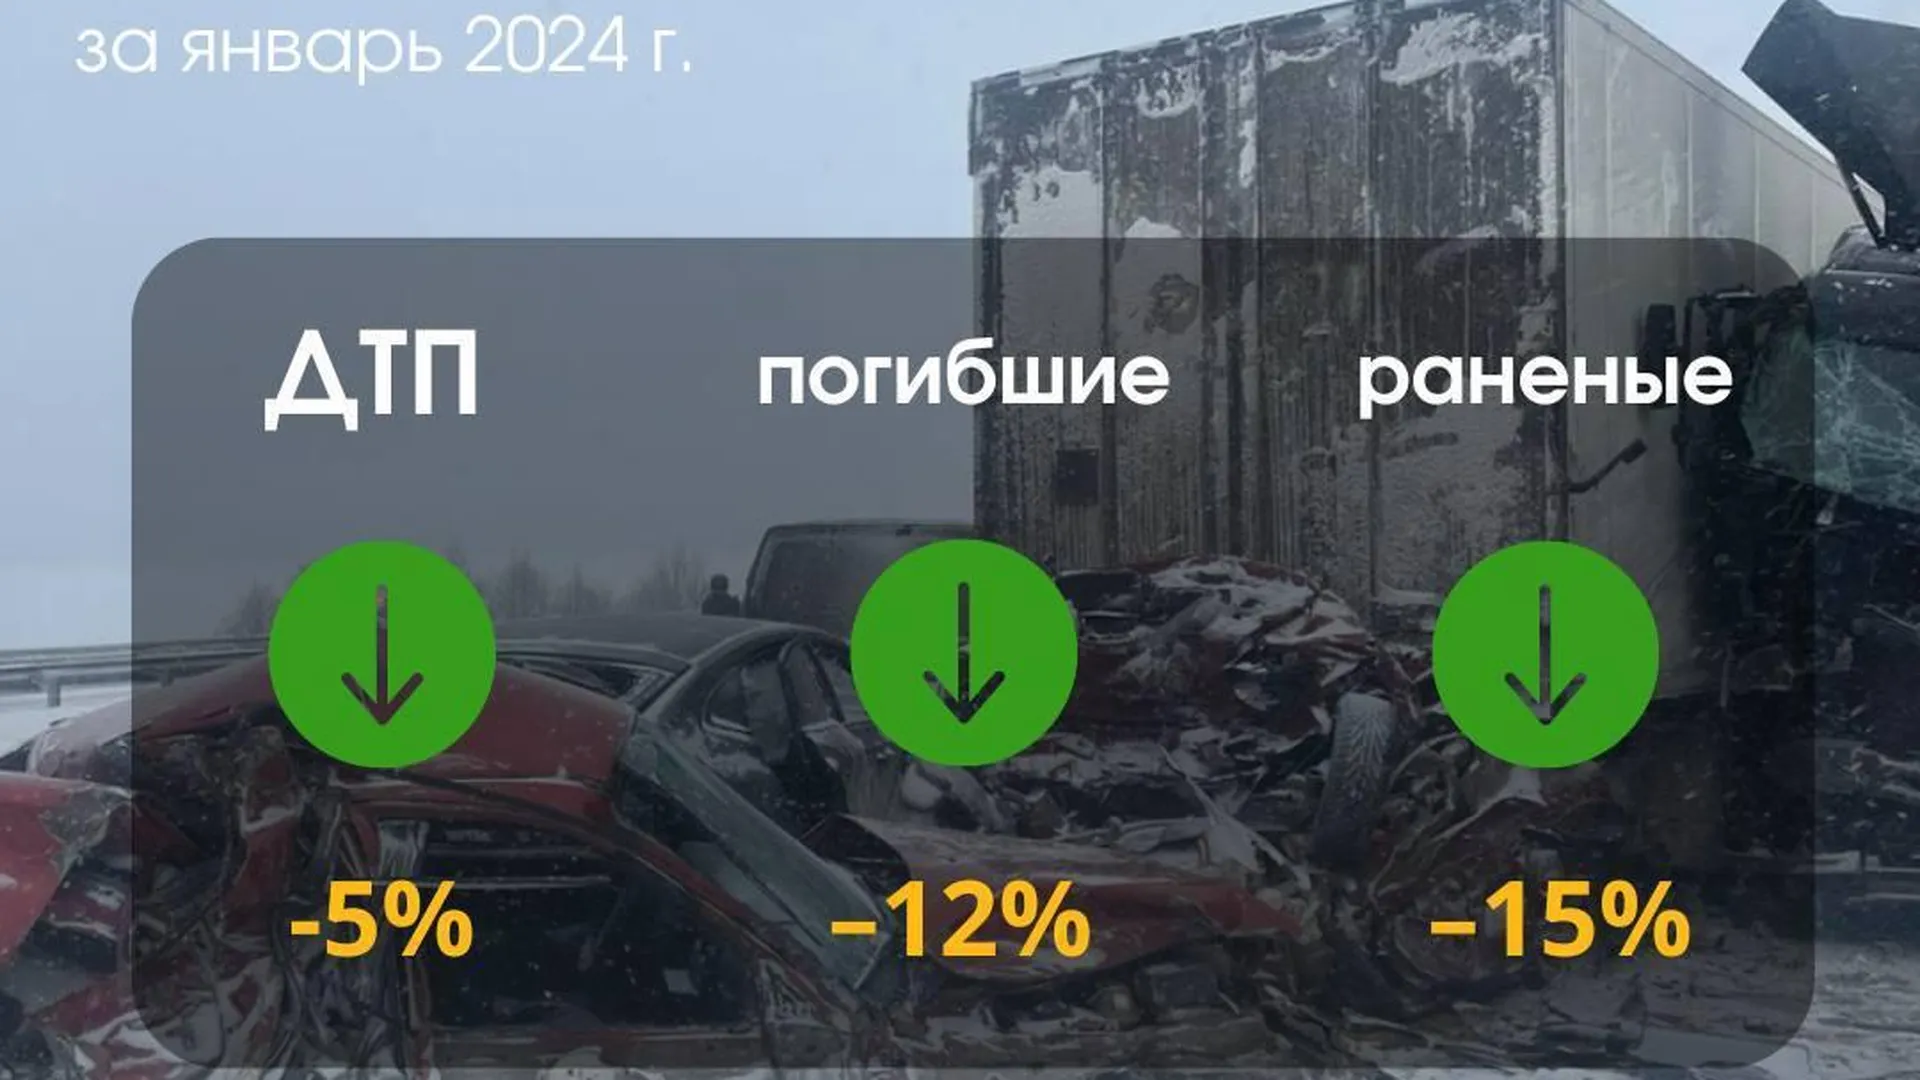 Аварий с погибшими и ранеными стало на 5% меньше в Подмосковье в январе